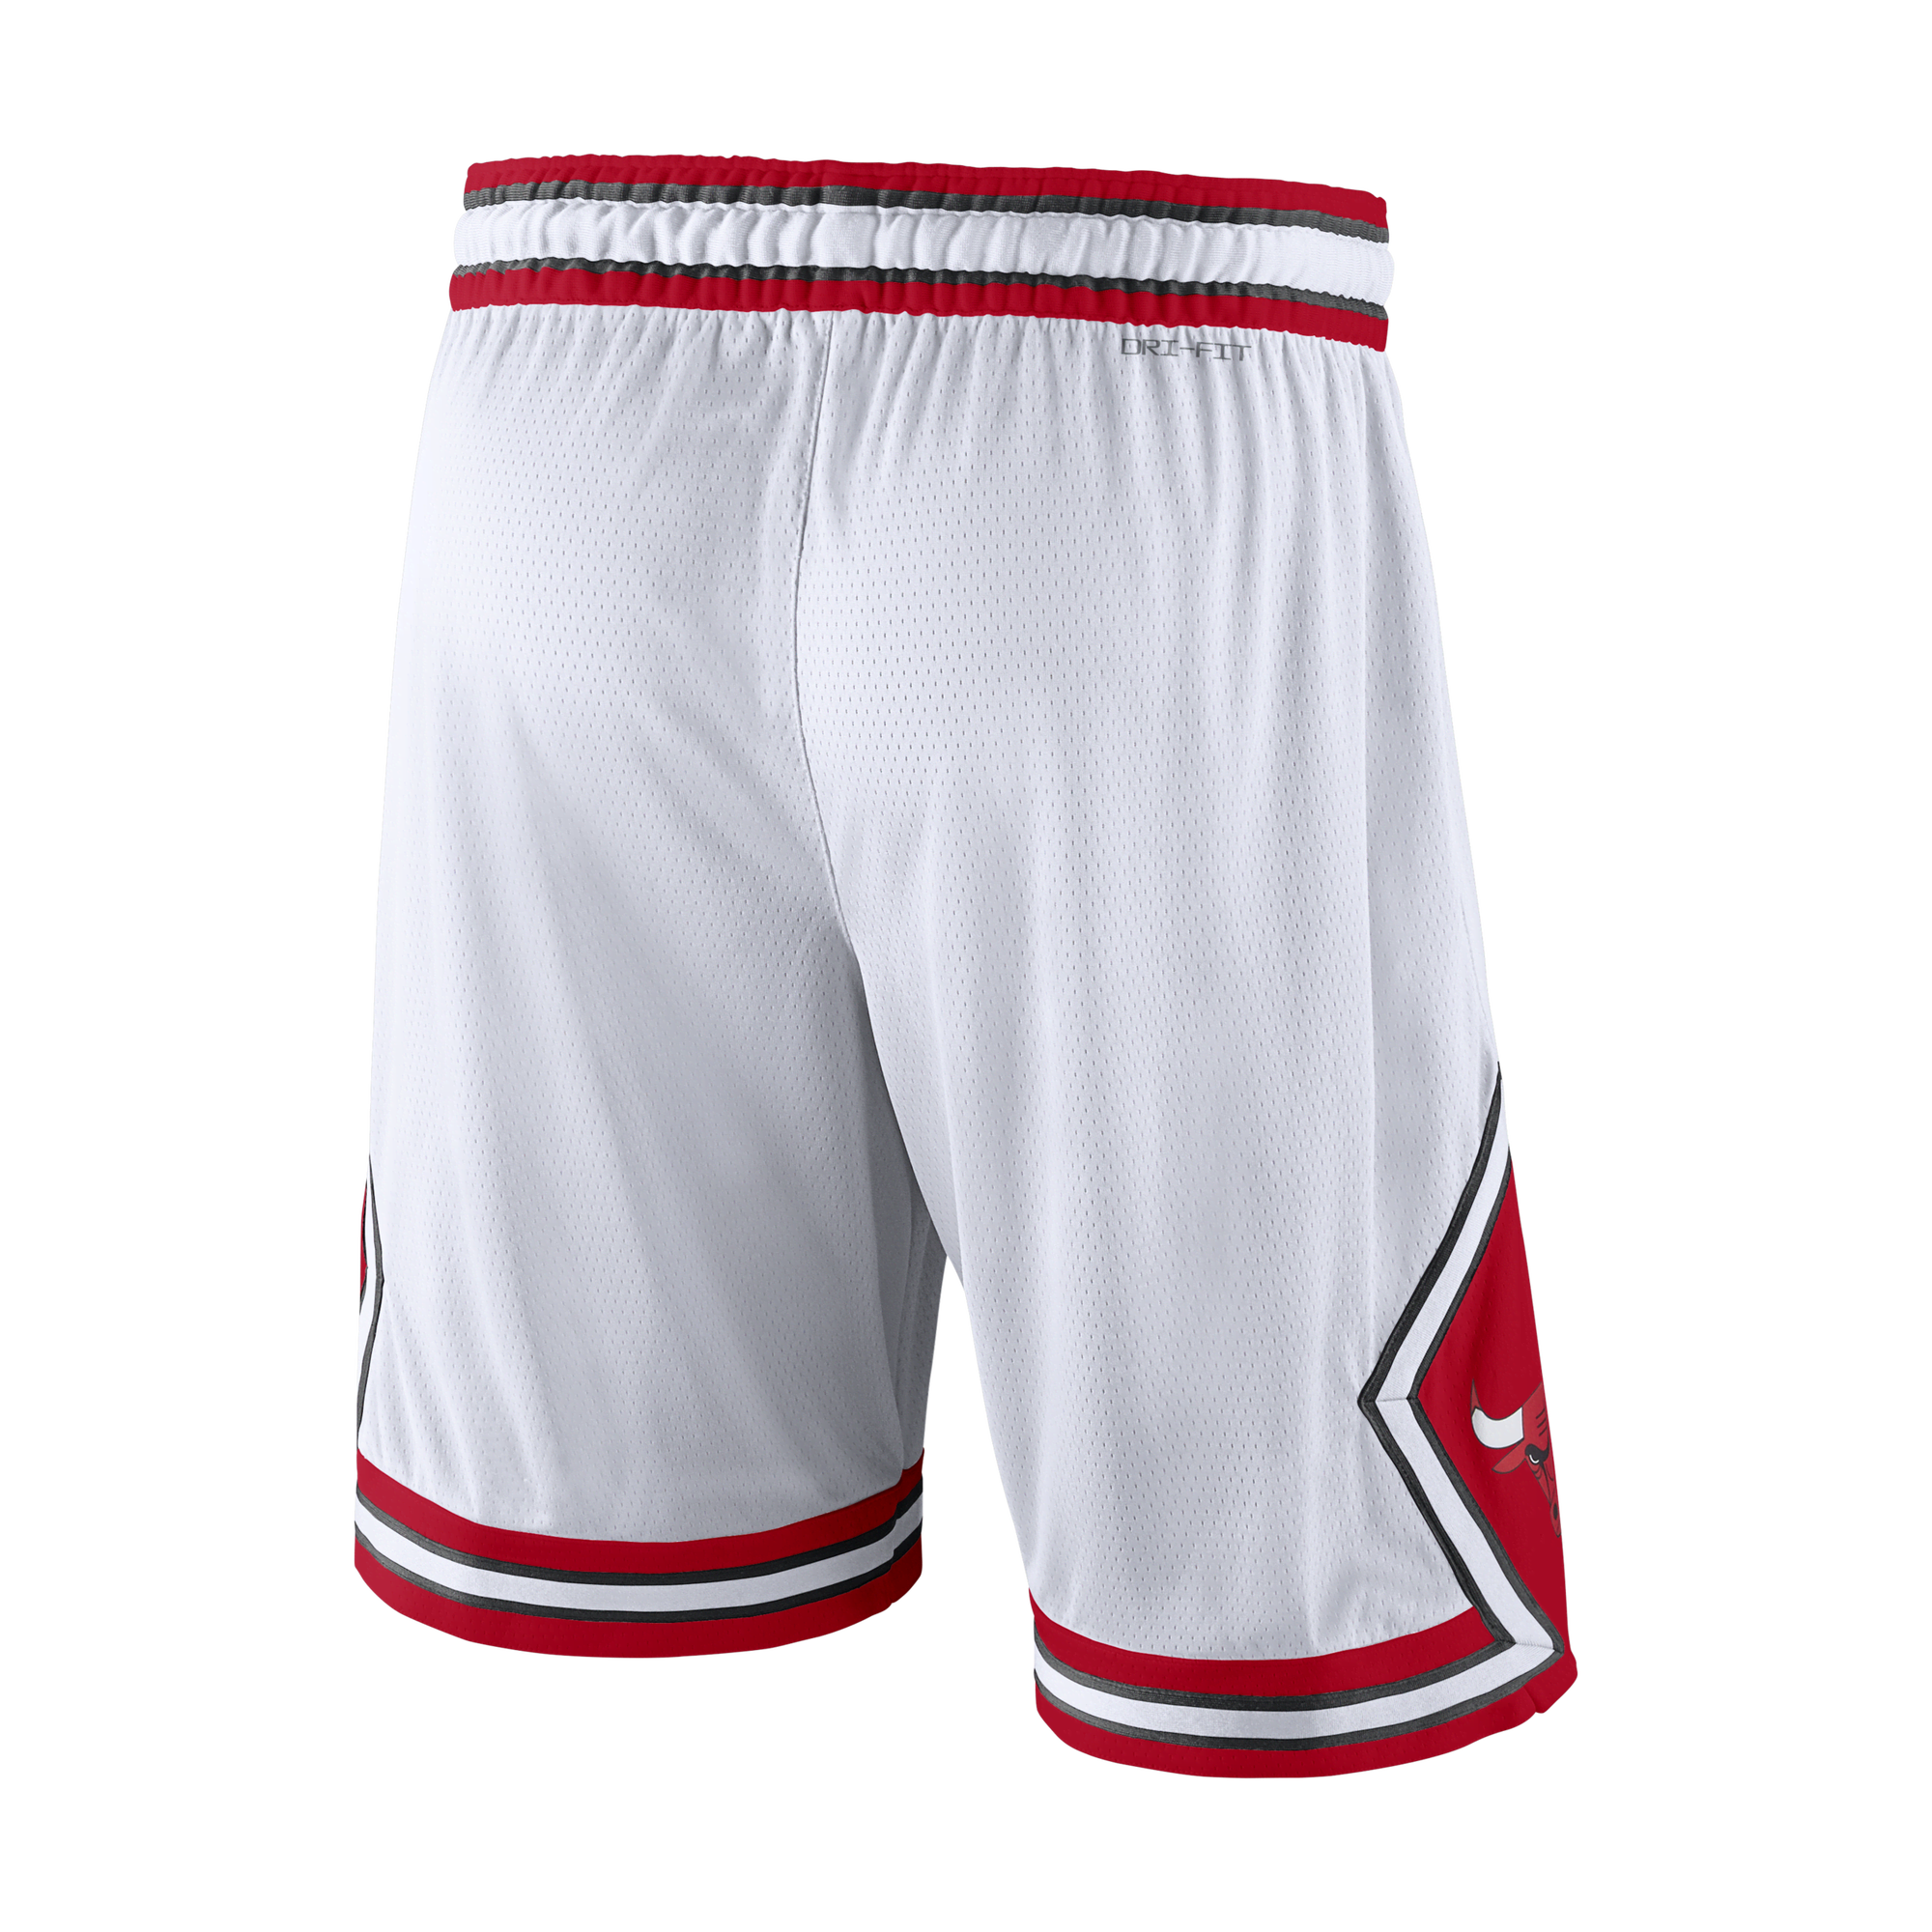 Nike NBA Chicago Bulls Tracksuit University Red/Black/White Men's